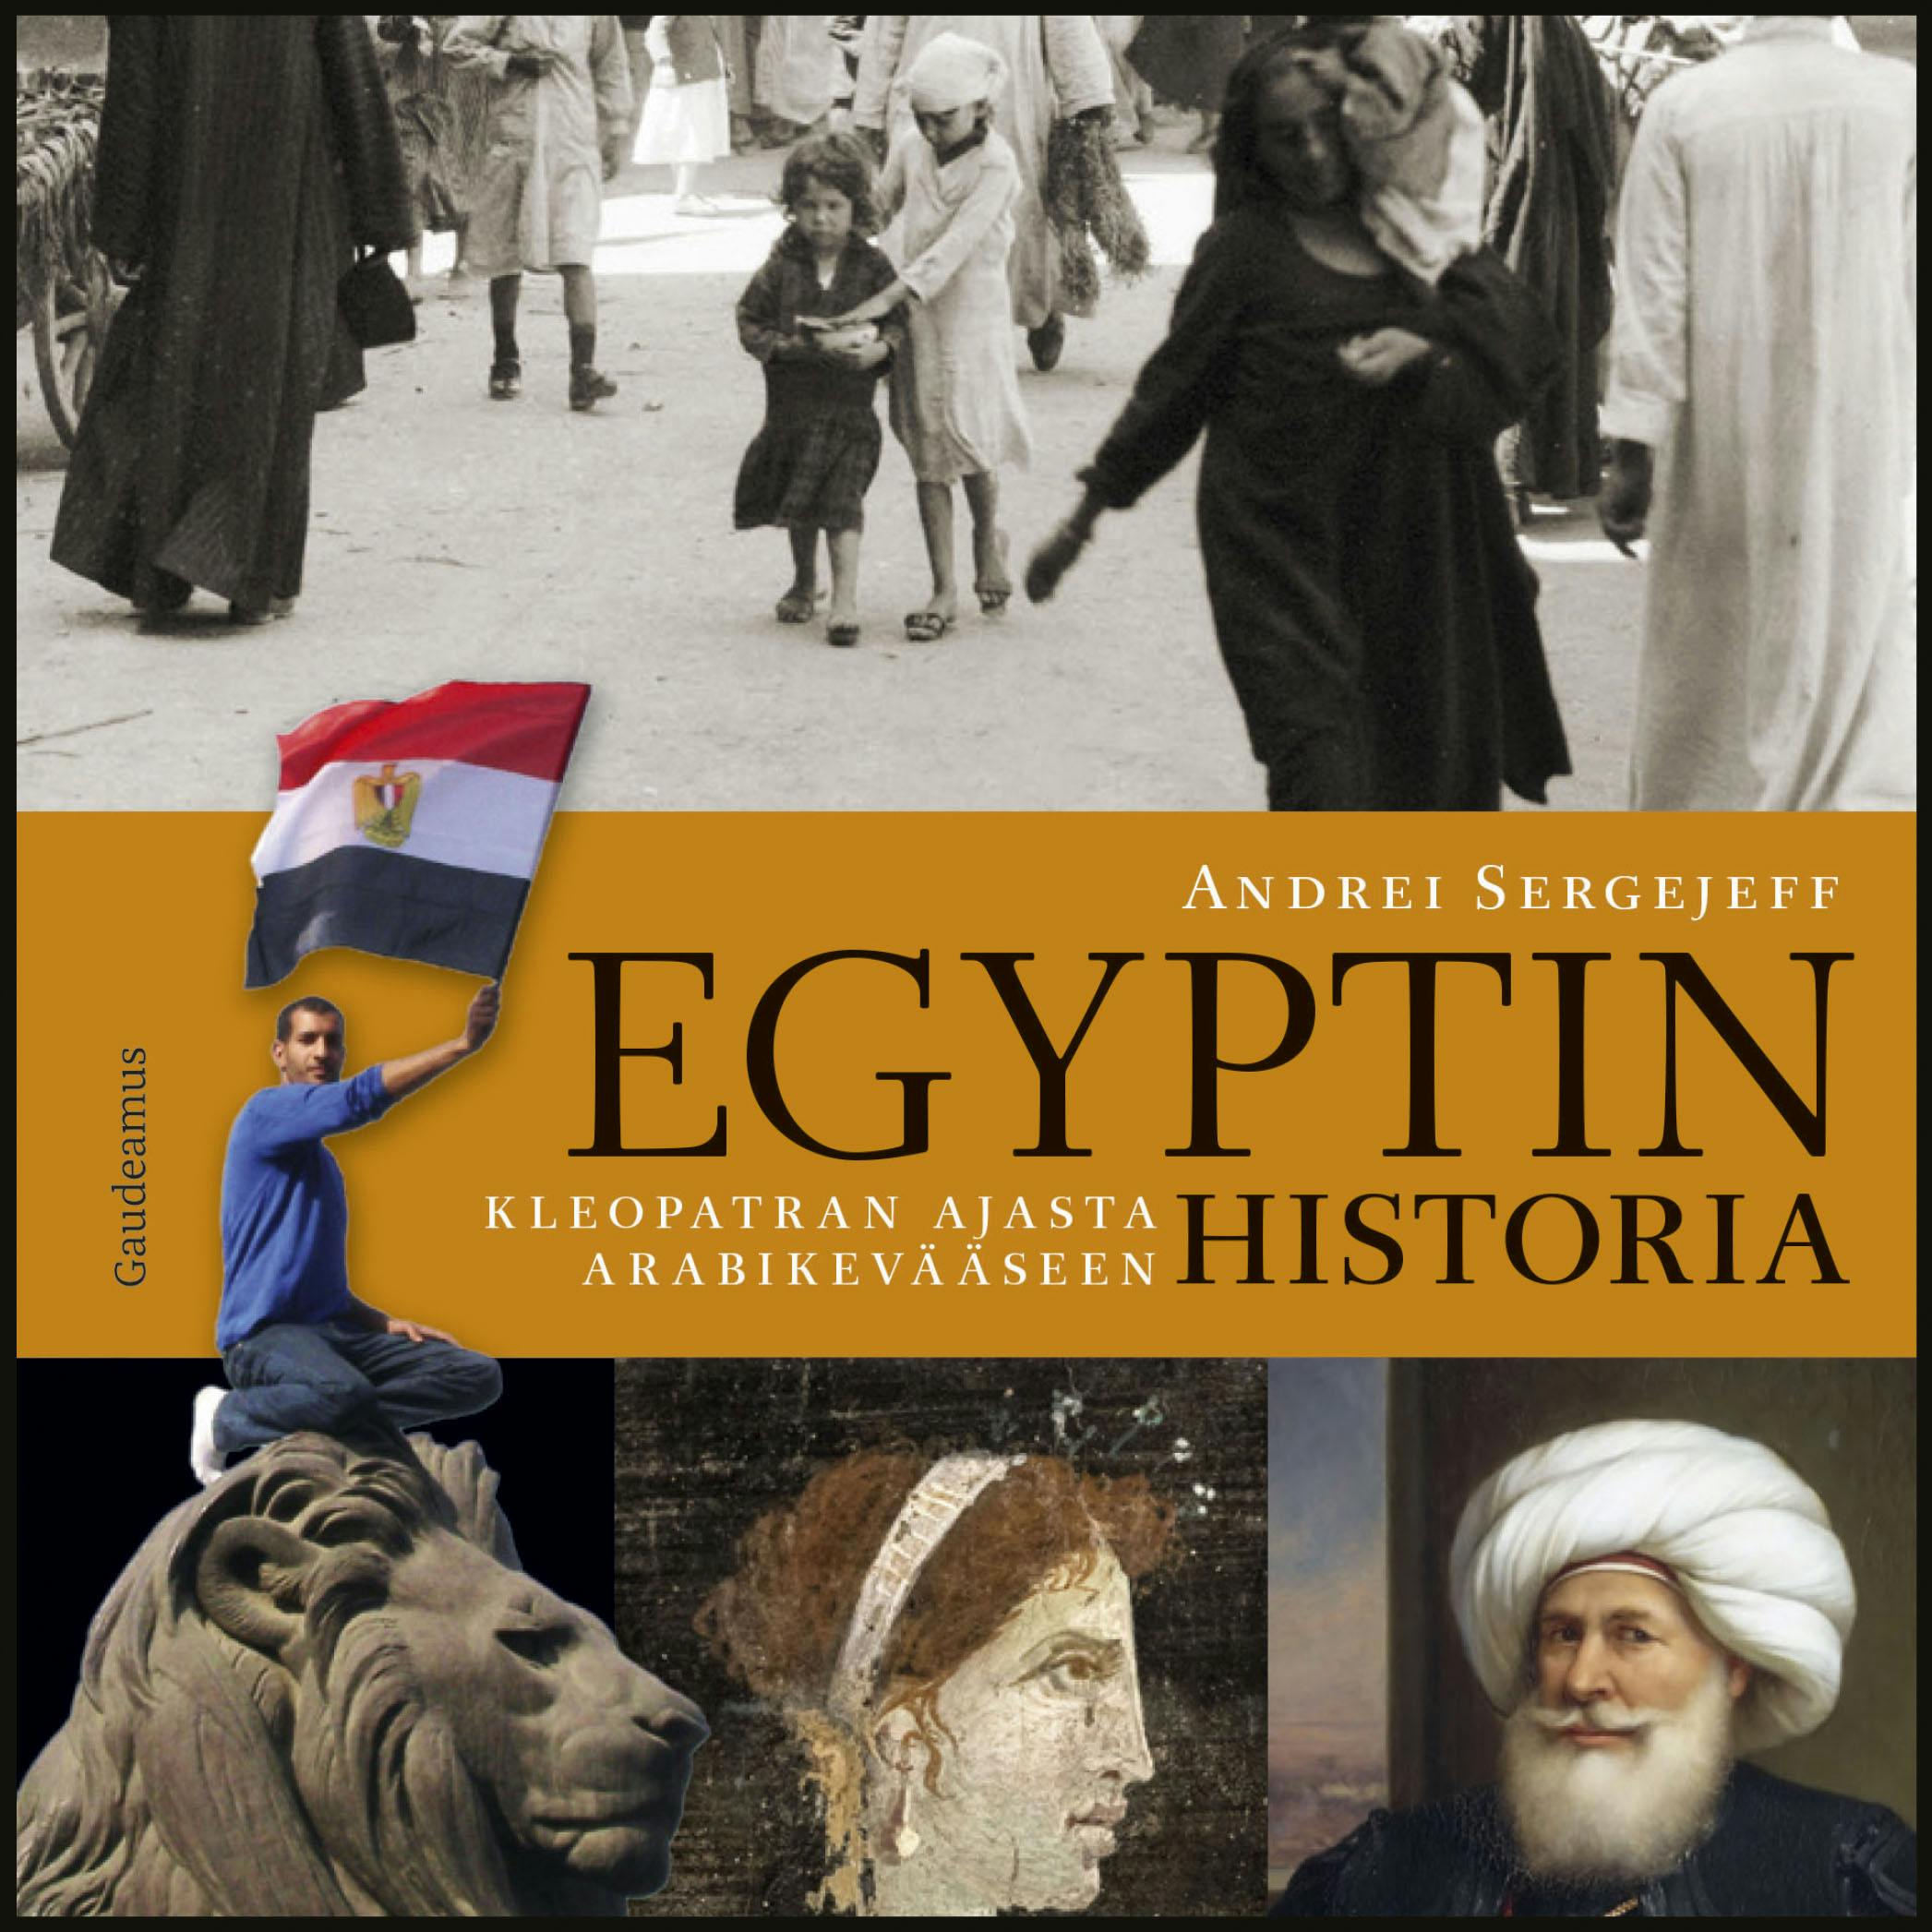 Egyptin historia: Kleopatran ajasta arabikevääseen - Andrei Sergejeff